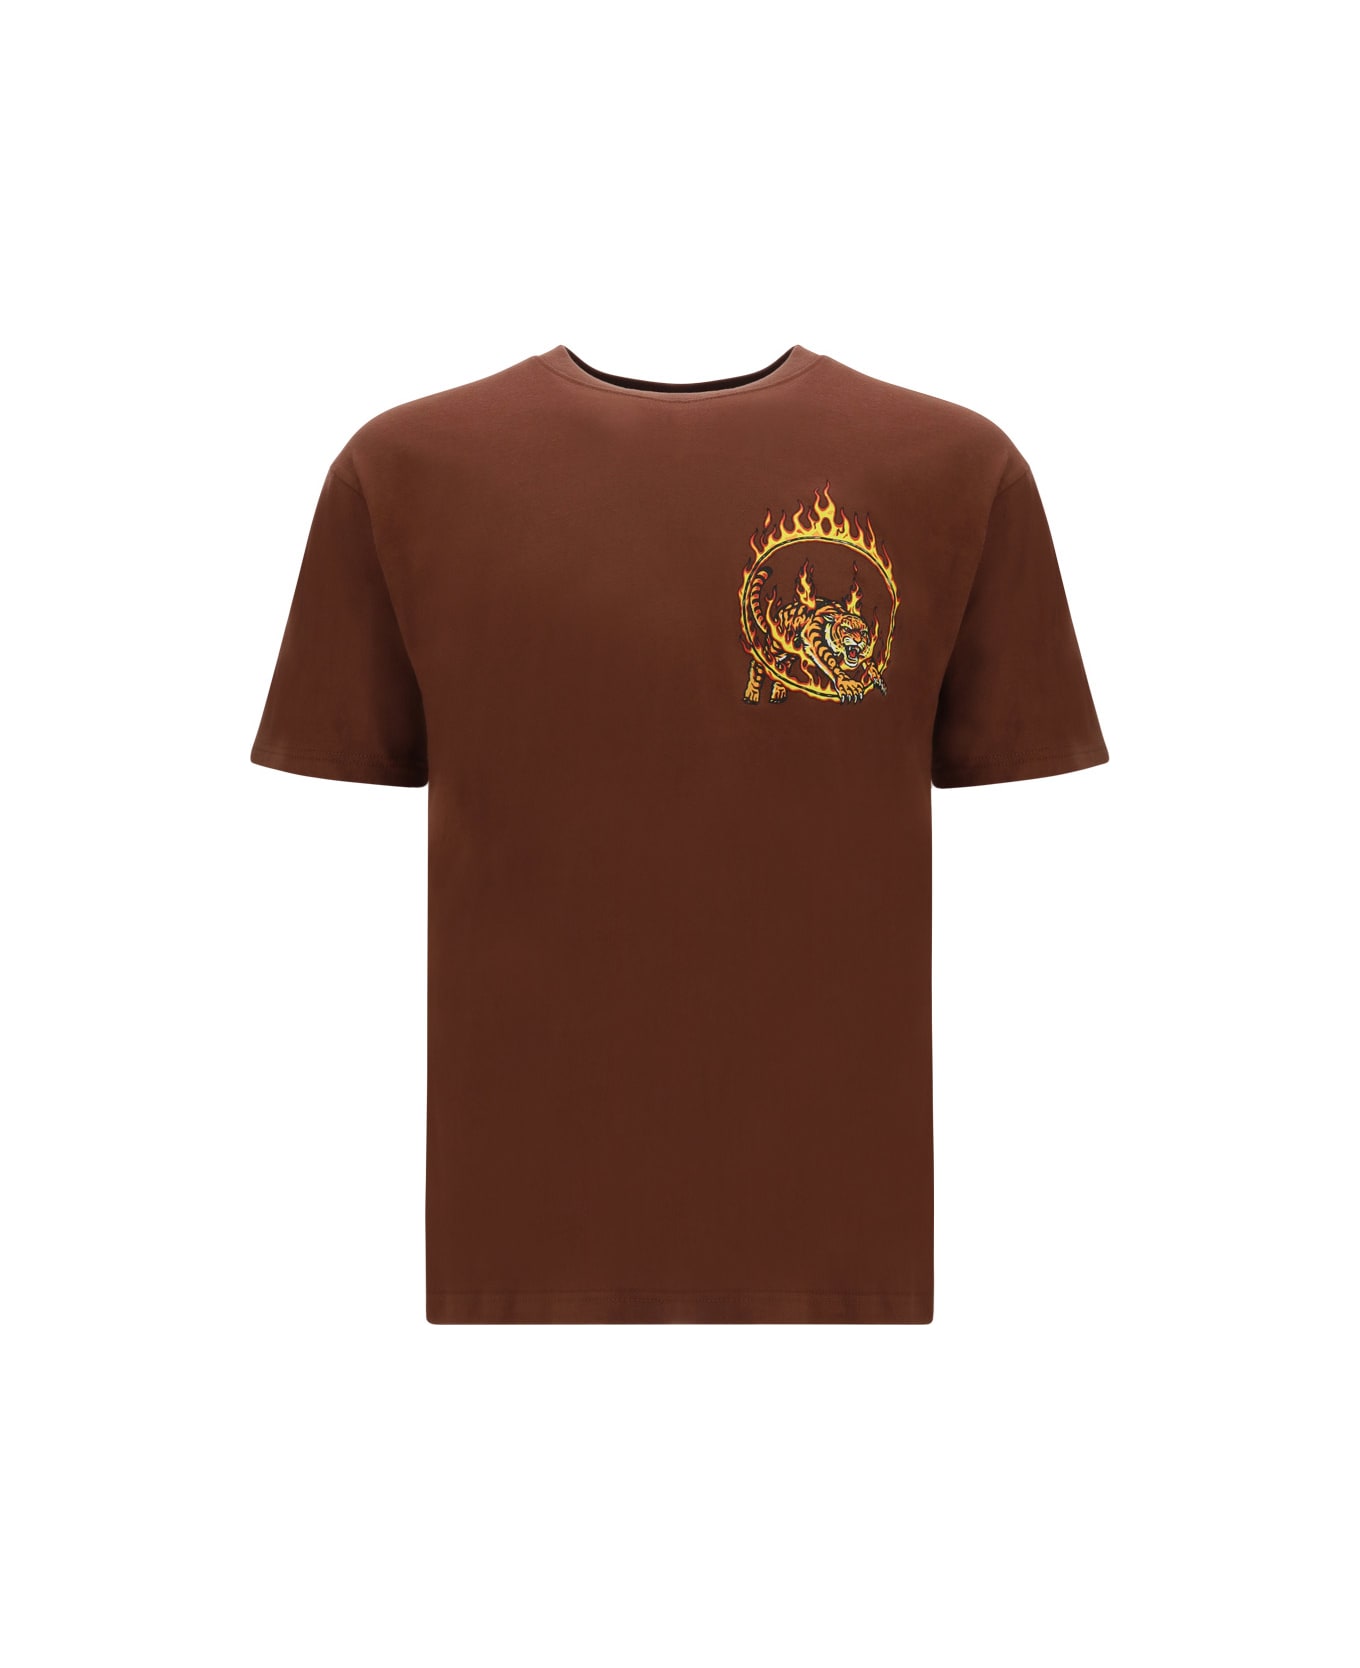 Market Eater T-shirt - Brown